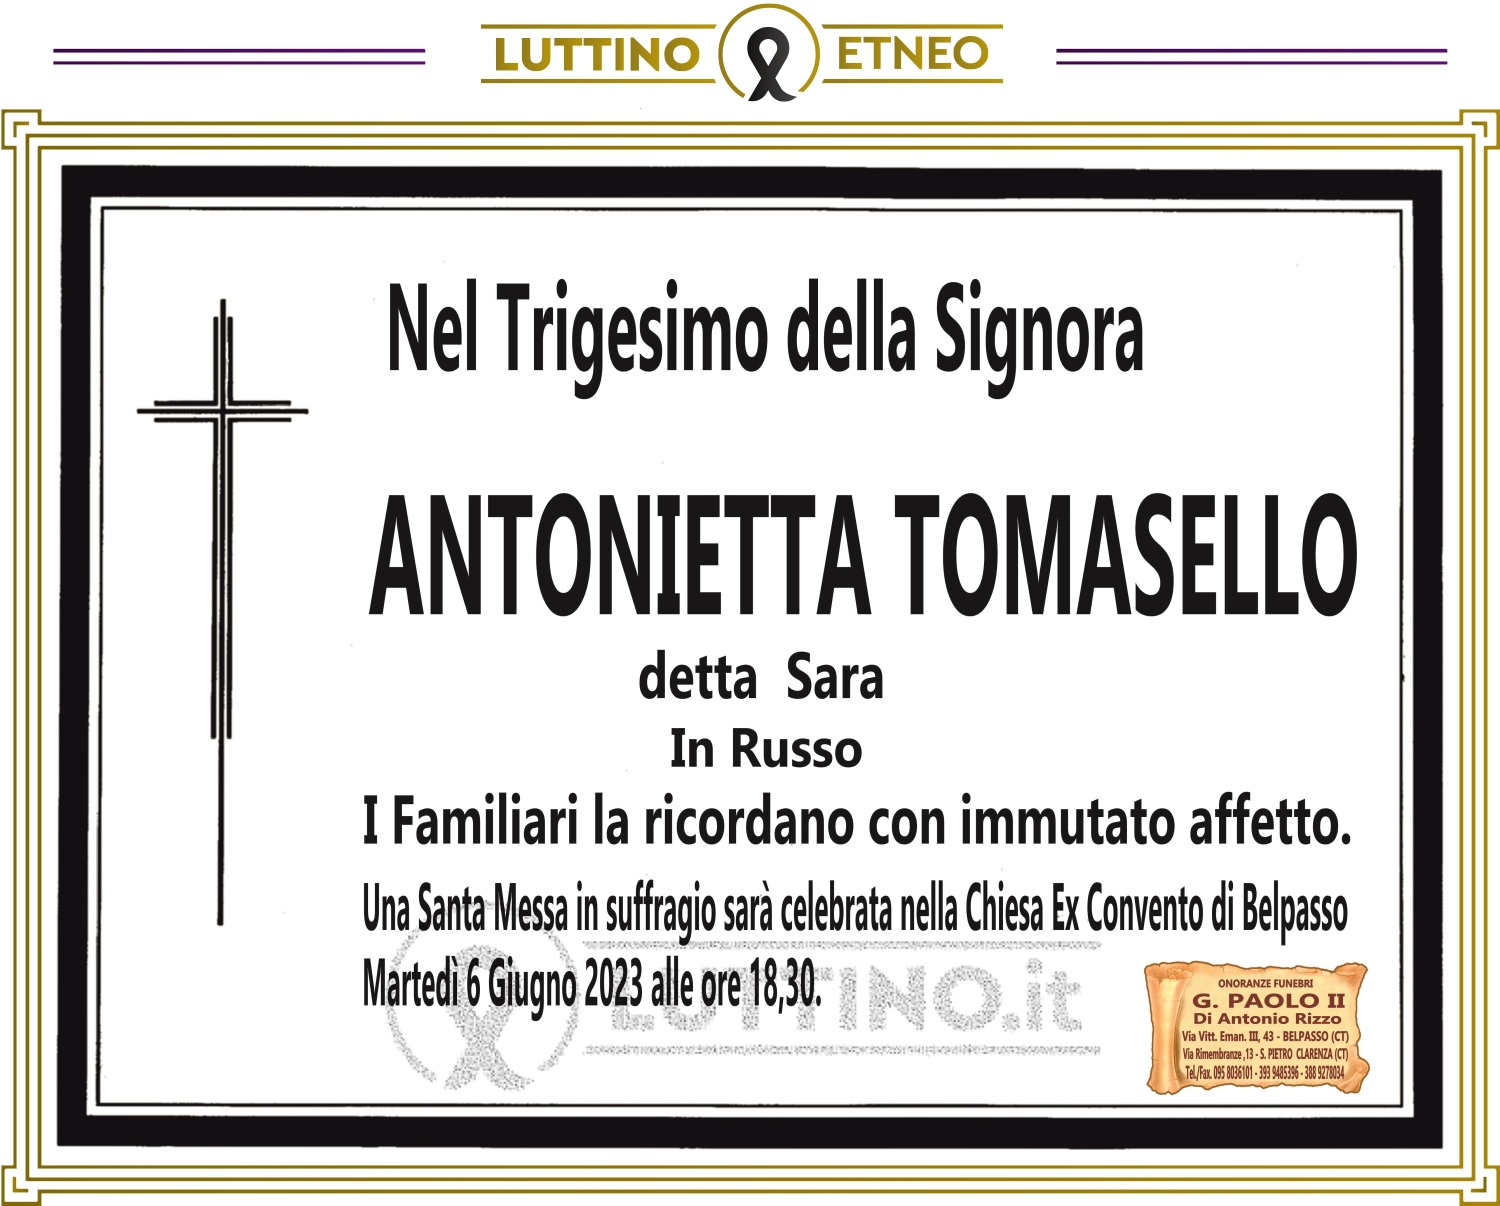 Antonietta Tomasello